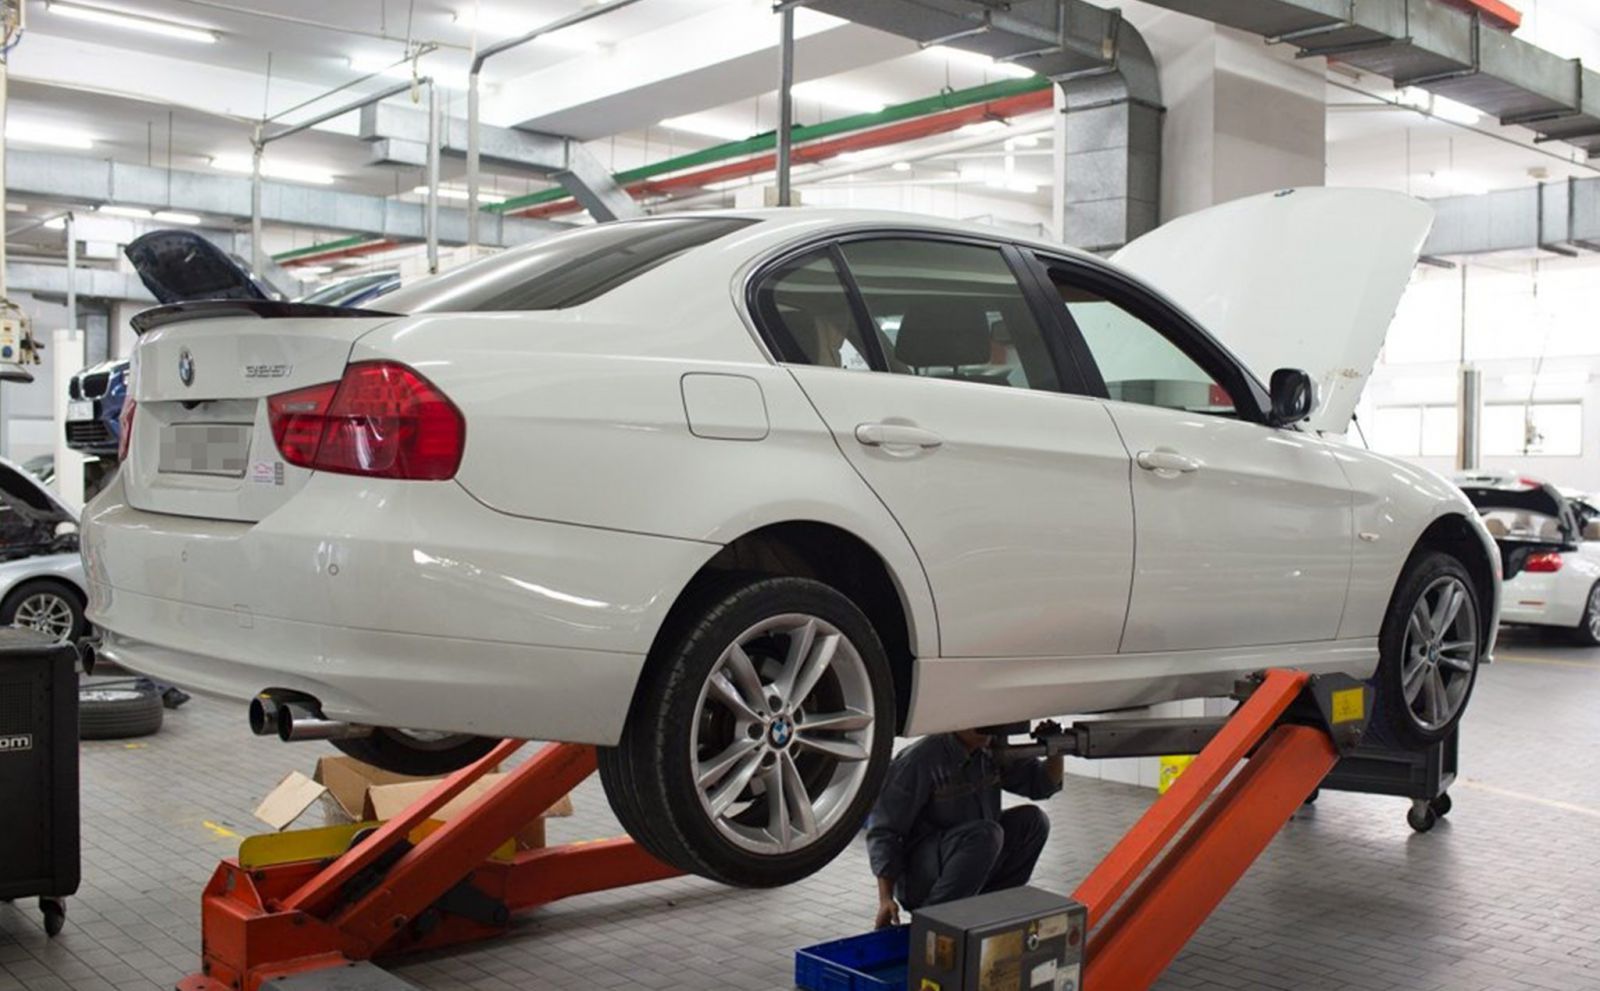 Tổng quan về sửa chữa xe BMW  Hiểu biết để tránh tiền mất tật mang